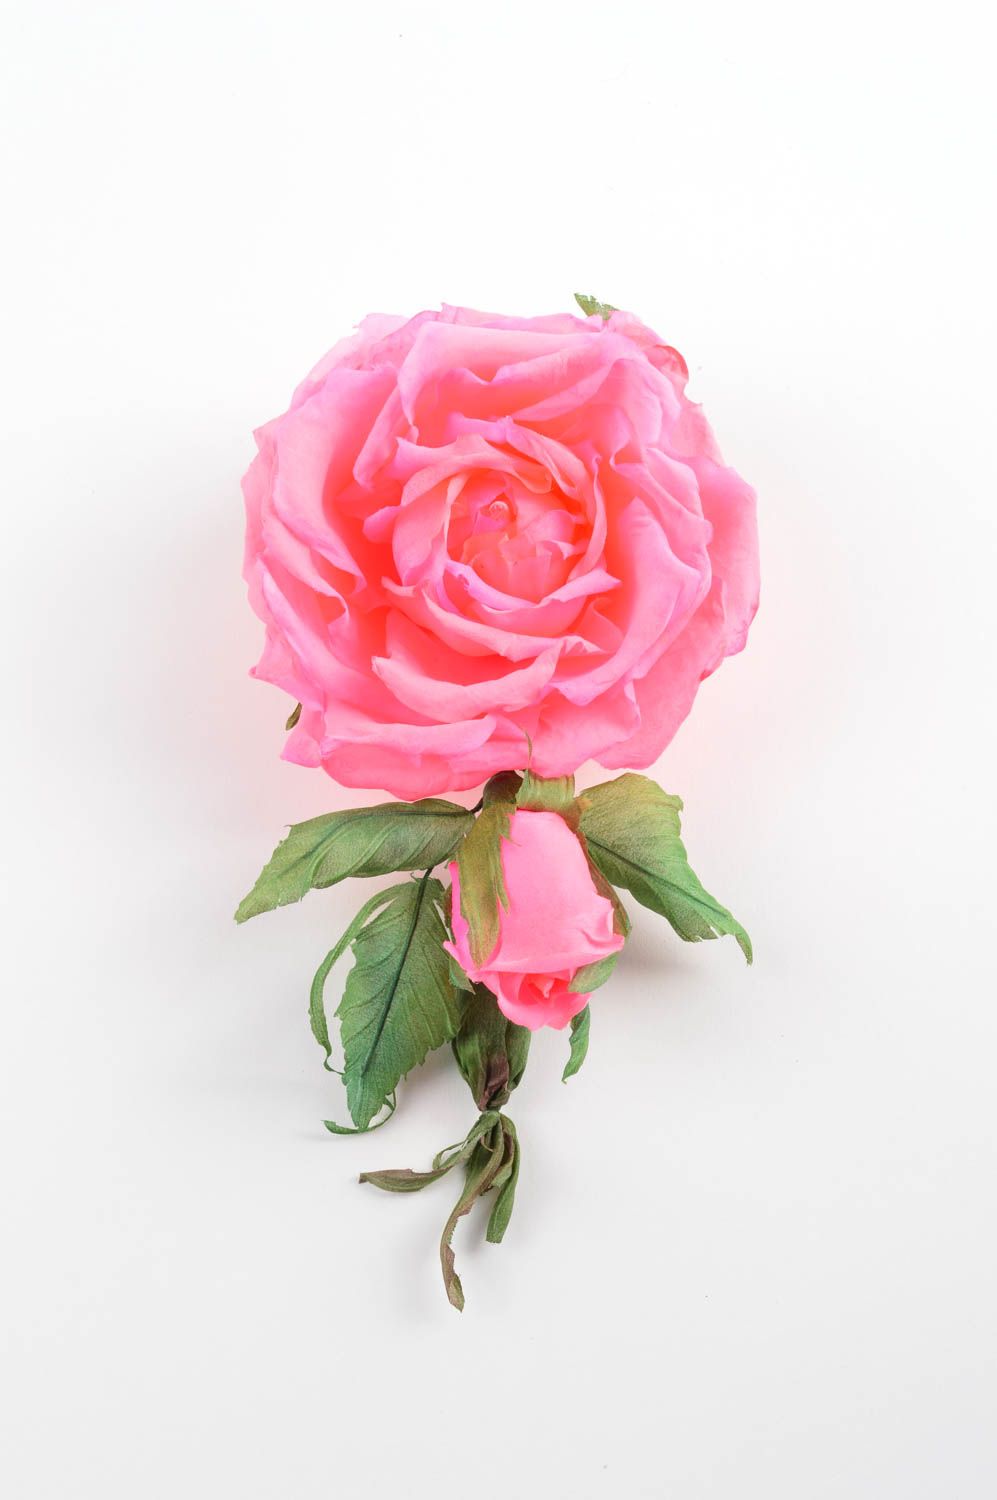 Брошь из шелка хэнд мэйд брошь-заколка розовая роза авторская бижутерия фото 3